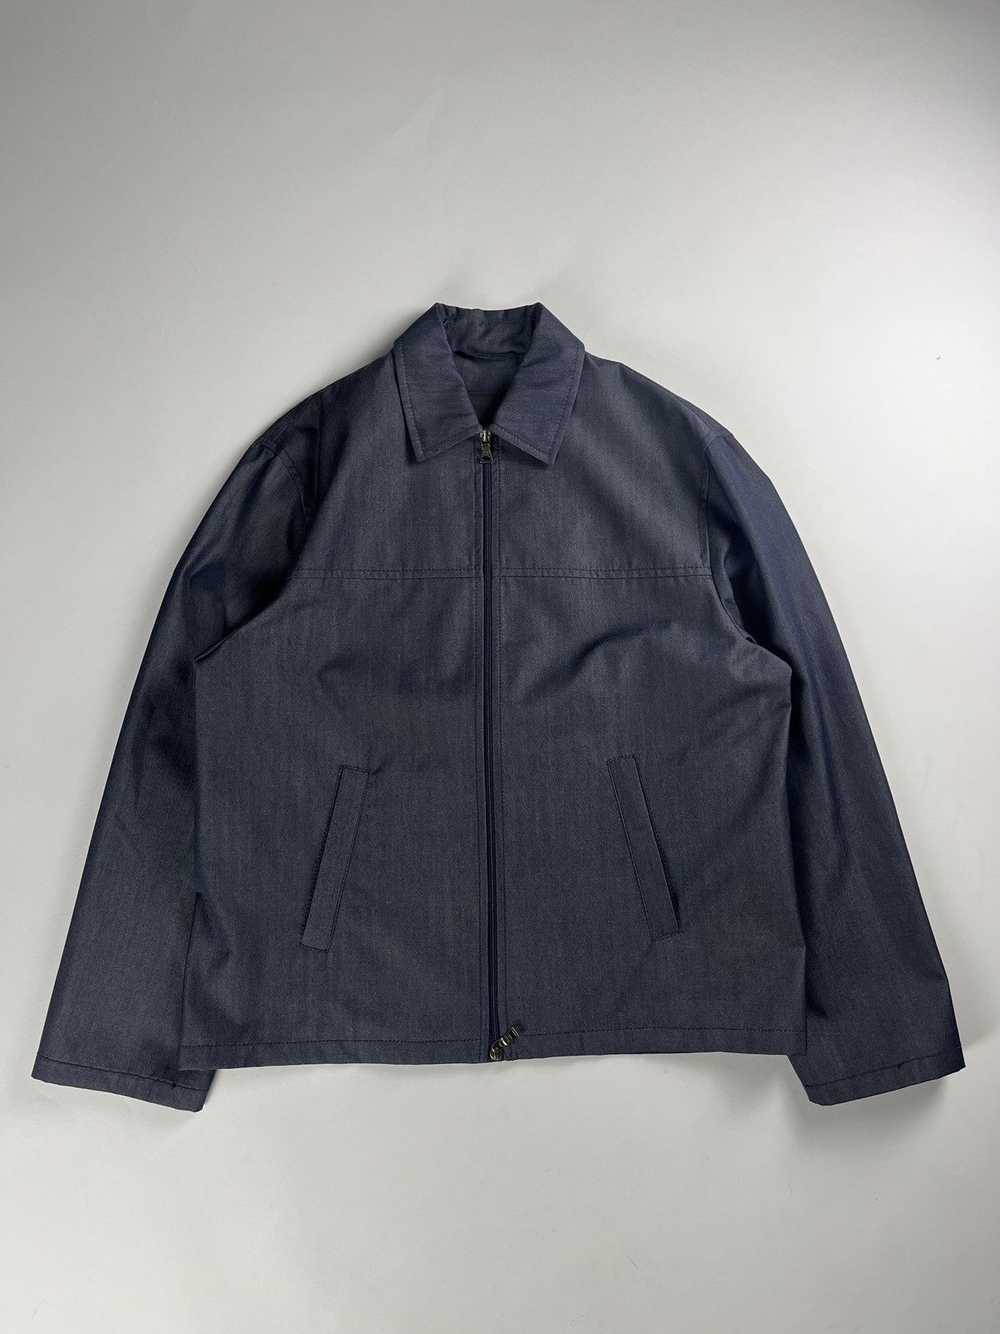 Prada Prada Double Zip Linen Jacket FW 1998 - image 1